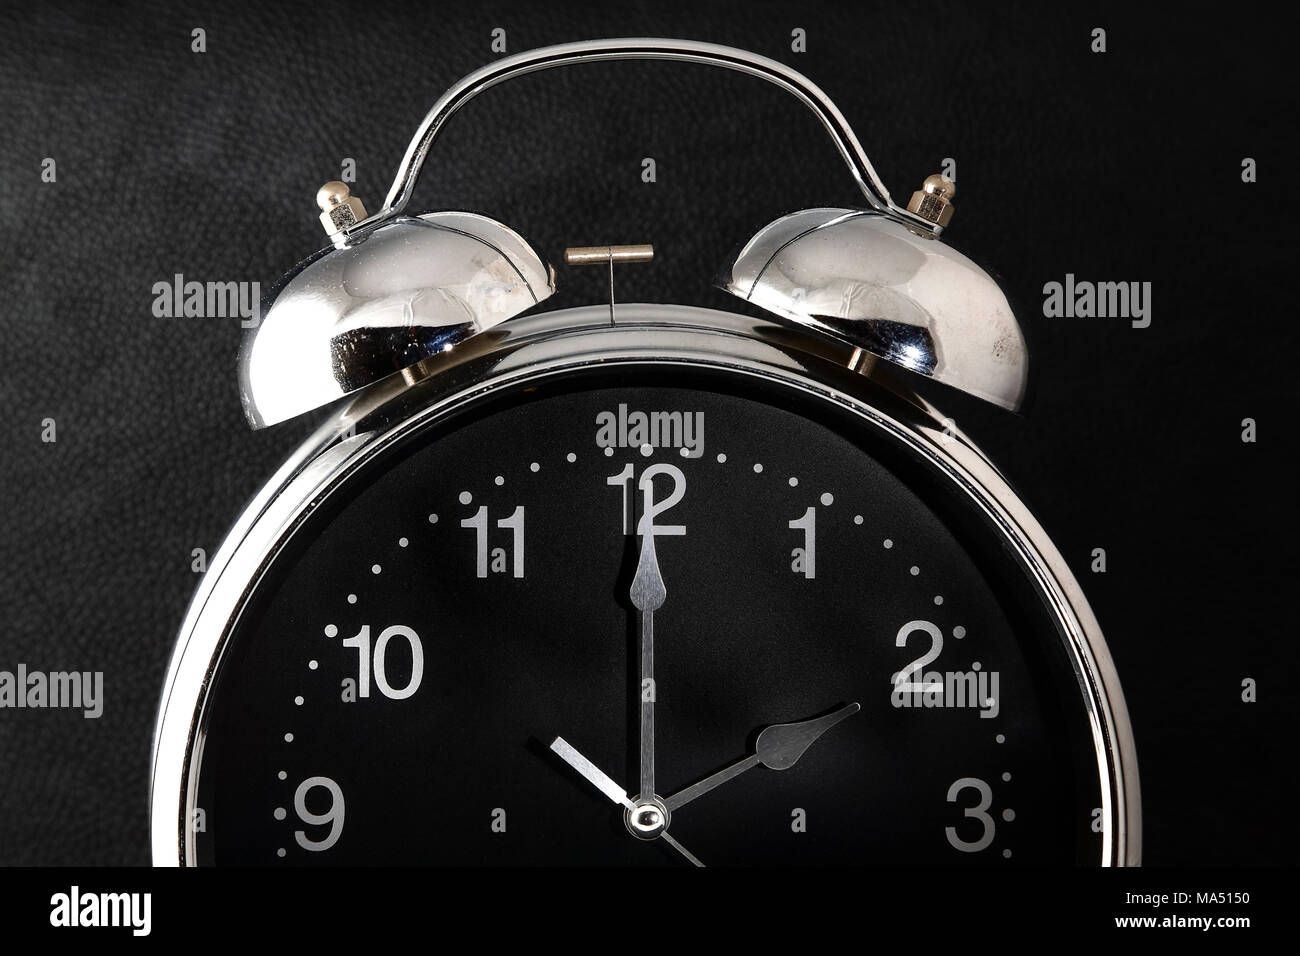 Antiguo reloj despertador retro con la hora y el minuto de manos ajustado a 2 o'clock 2 am o 2 pm aislado en un fondo negro Foto de stock